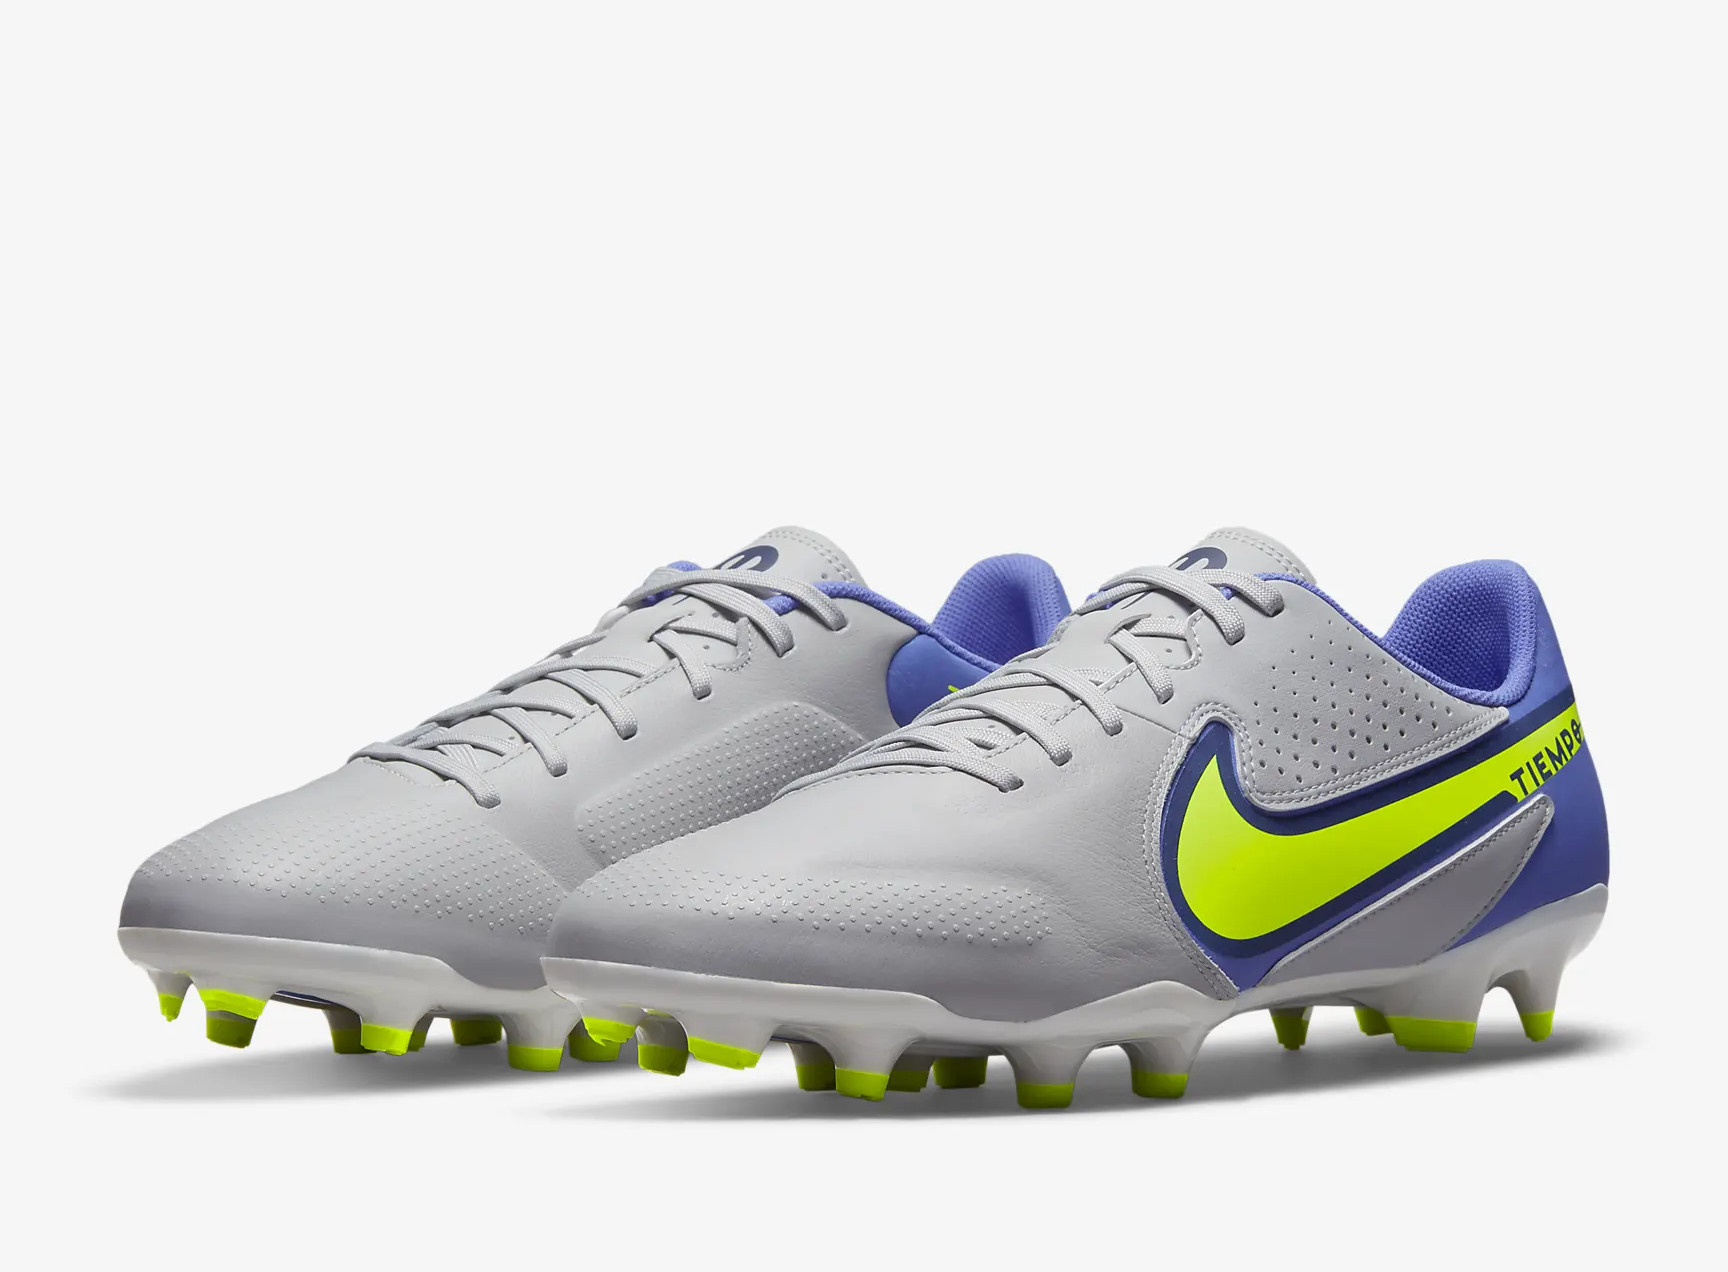 Grijs/blauwe Nike Legend 9 voetbalschoenen Recharge pack - Voetbal-schoenen.eu